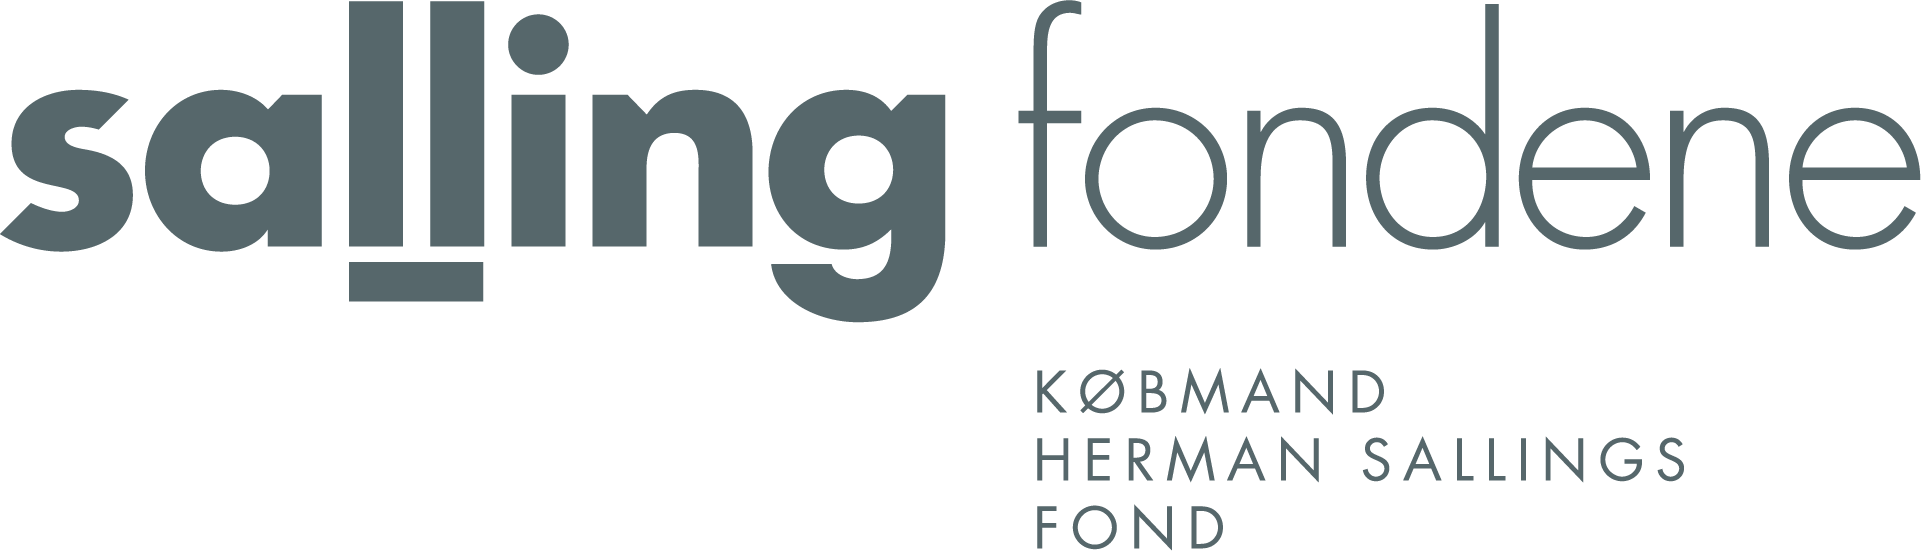 Herman Sallings Fonds Logo